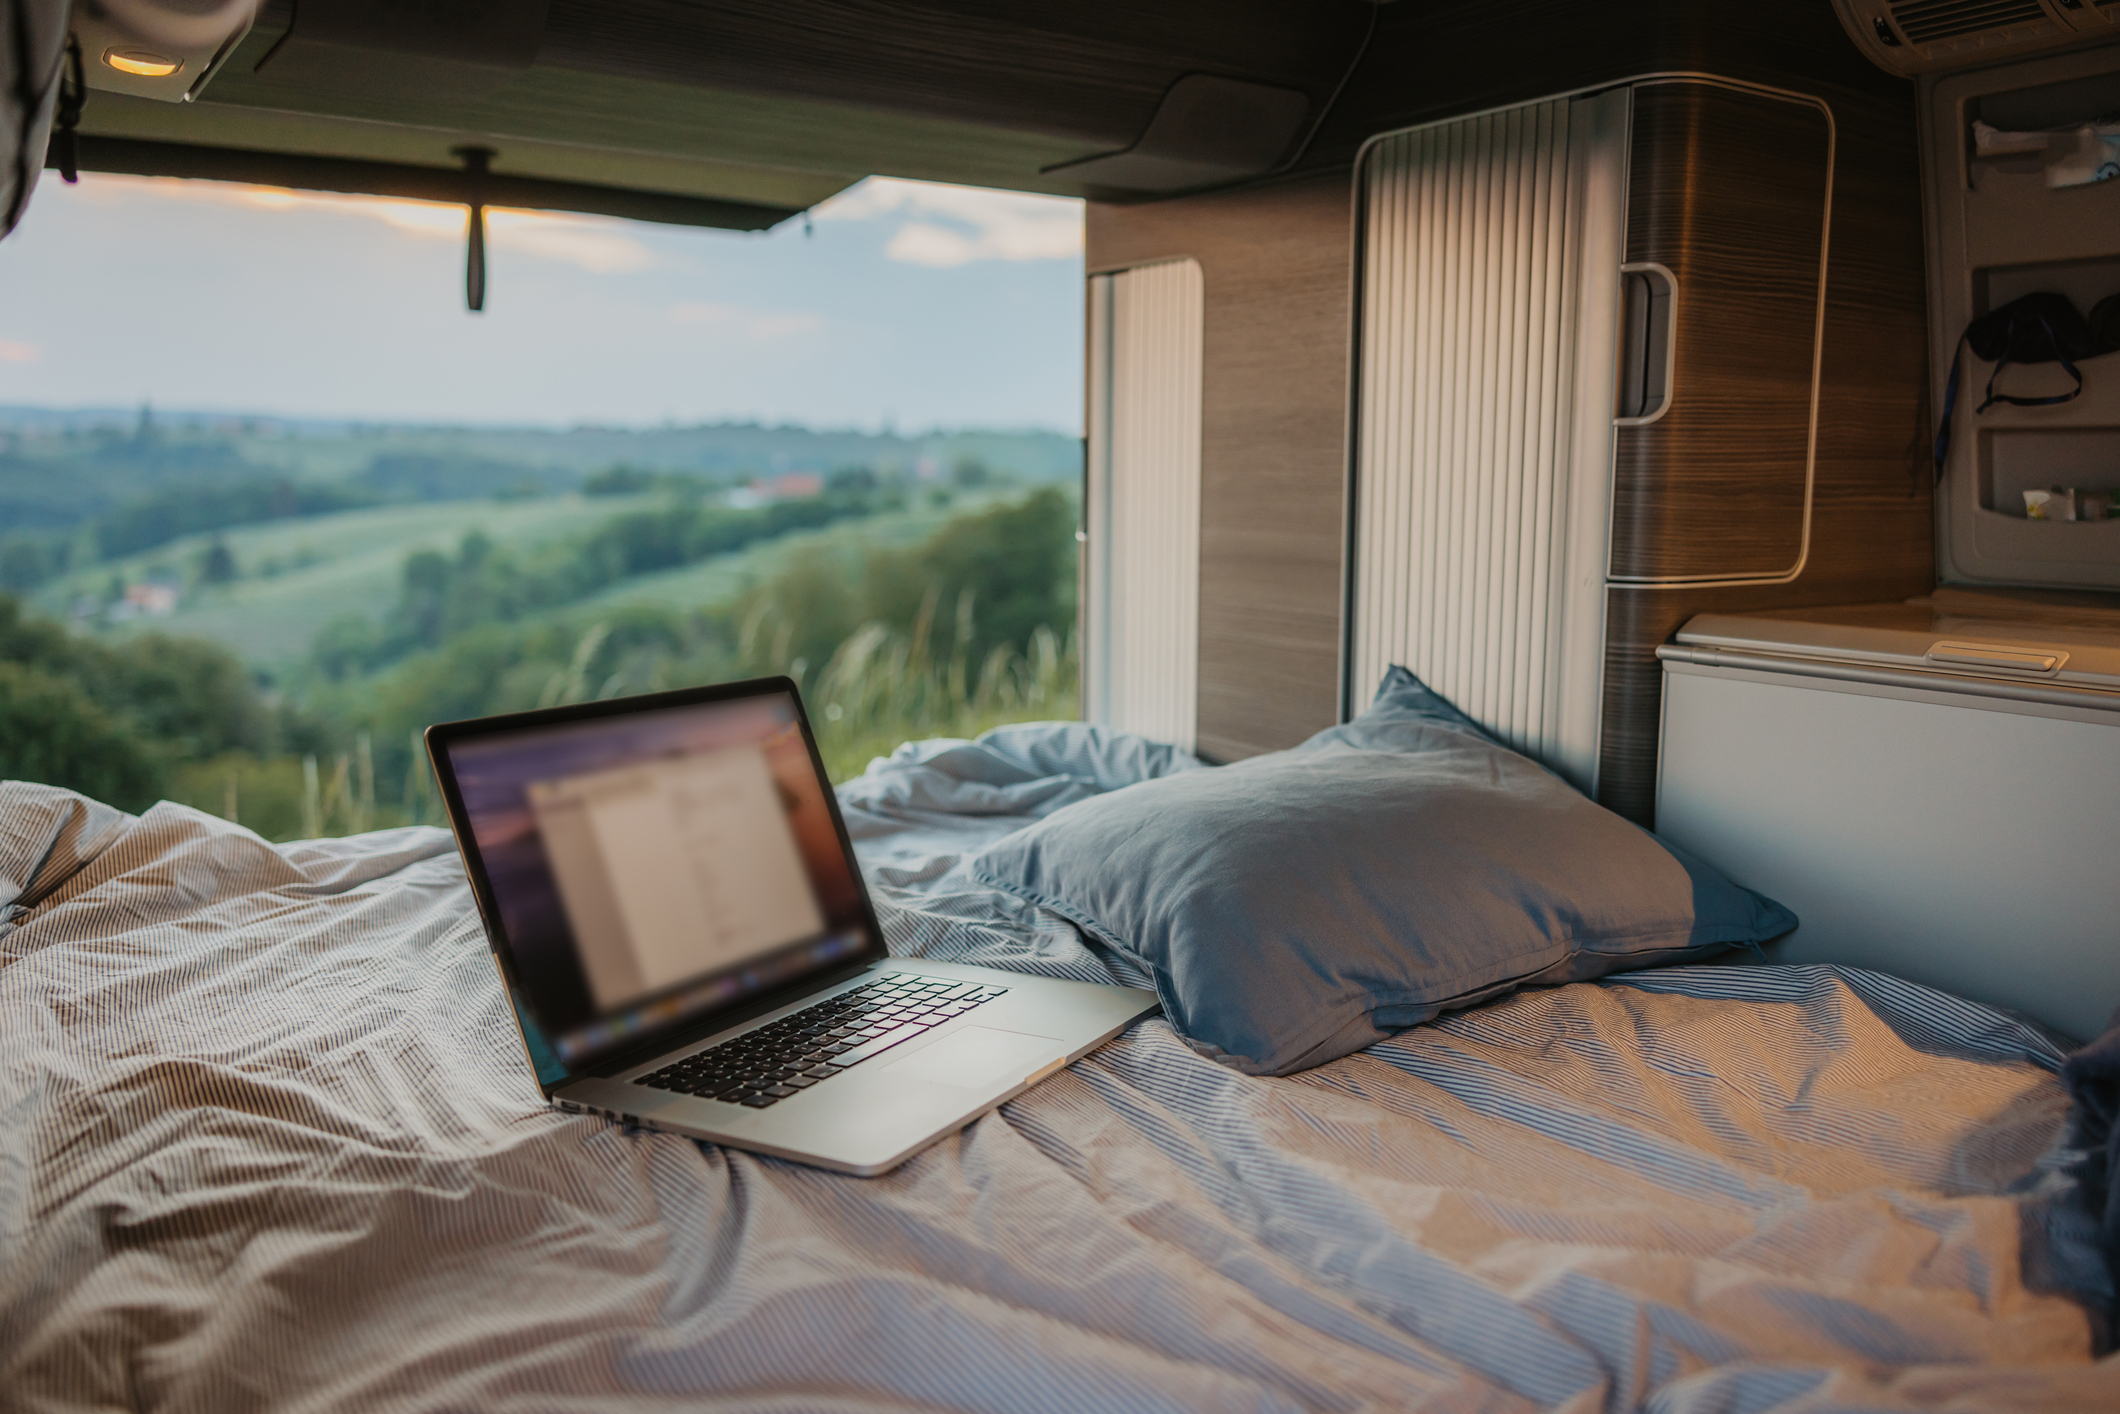 Auto-Luftmatratze: Aufblasbare Betten für Reisen im Auto